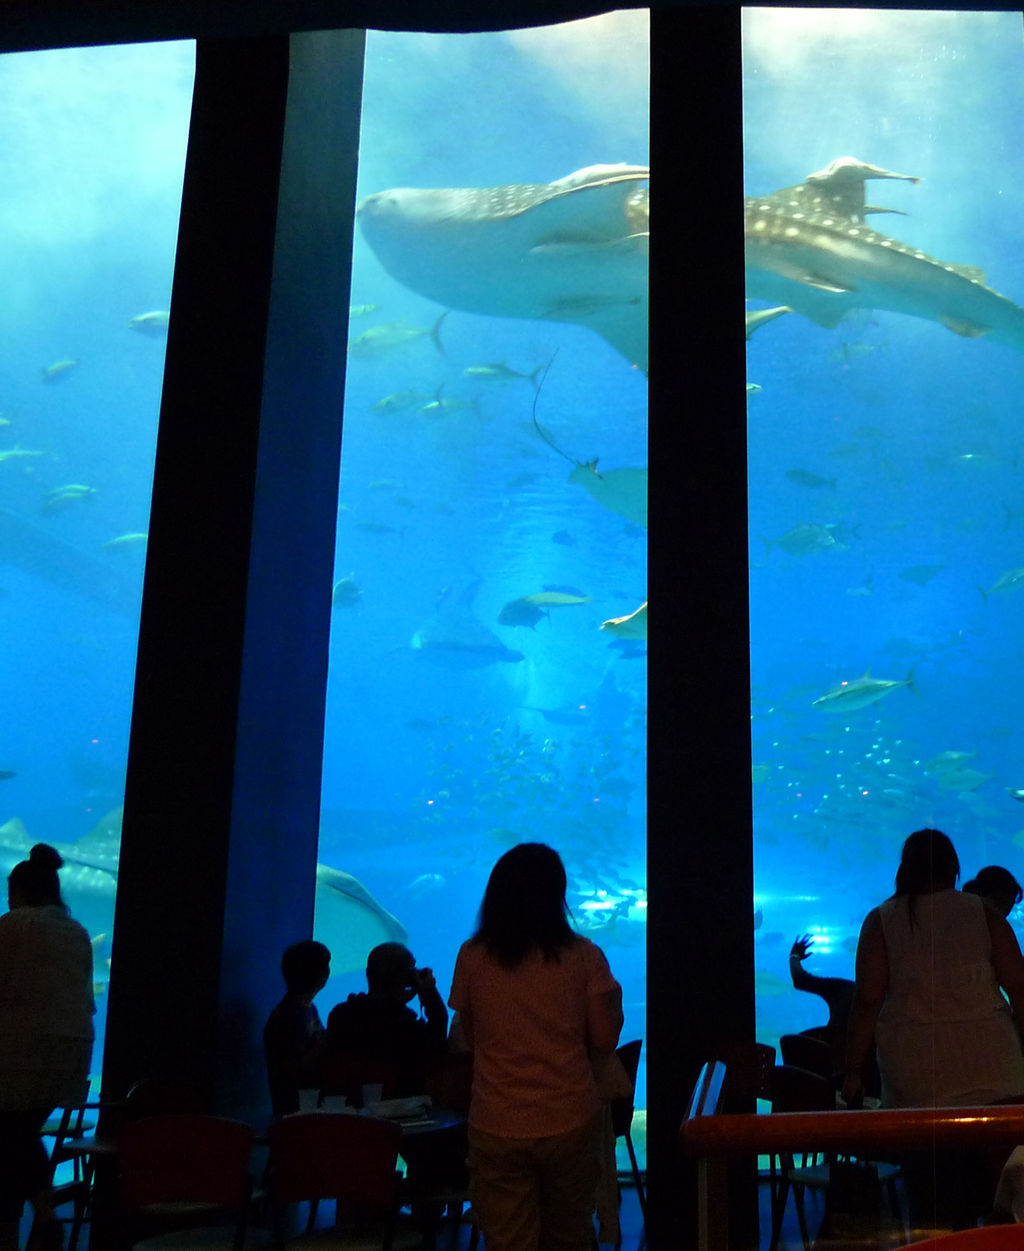 カフェ オーシャンブルー 美ら海水族館 菊さんの食い倒れ万遊記 うまいもの食べ歩きグルメ日記